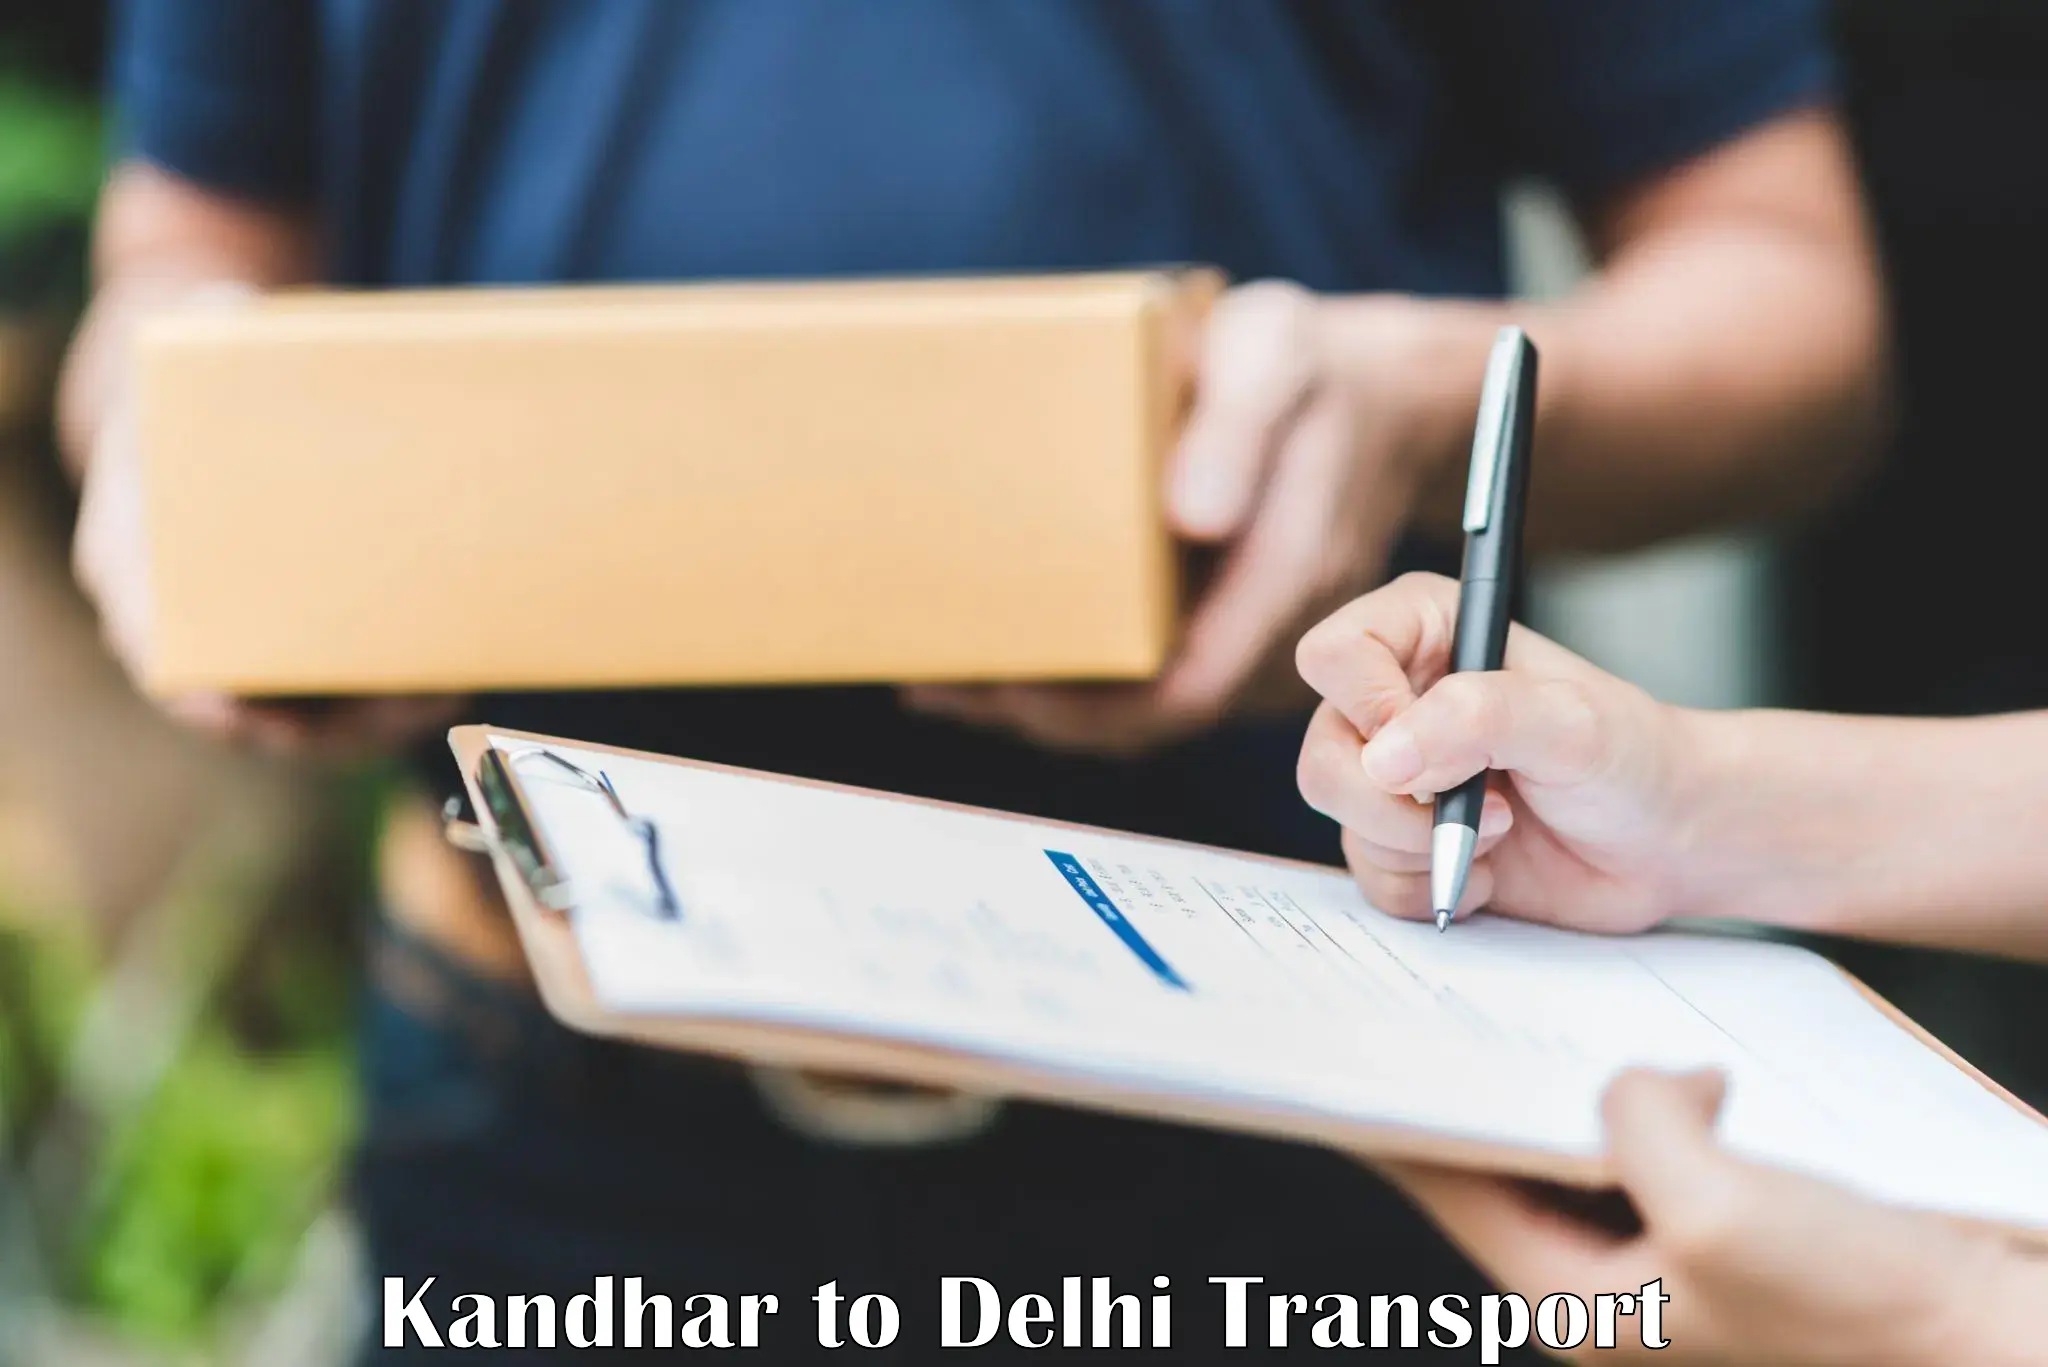 Bike transport service Kandhar to Lodhi Road